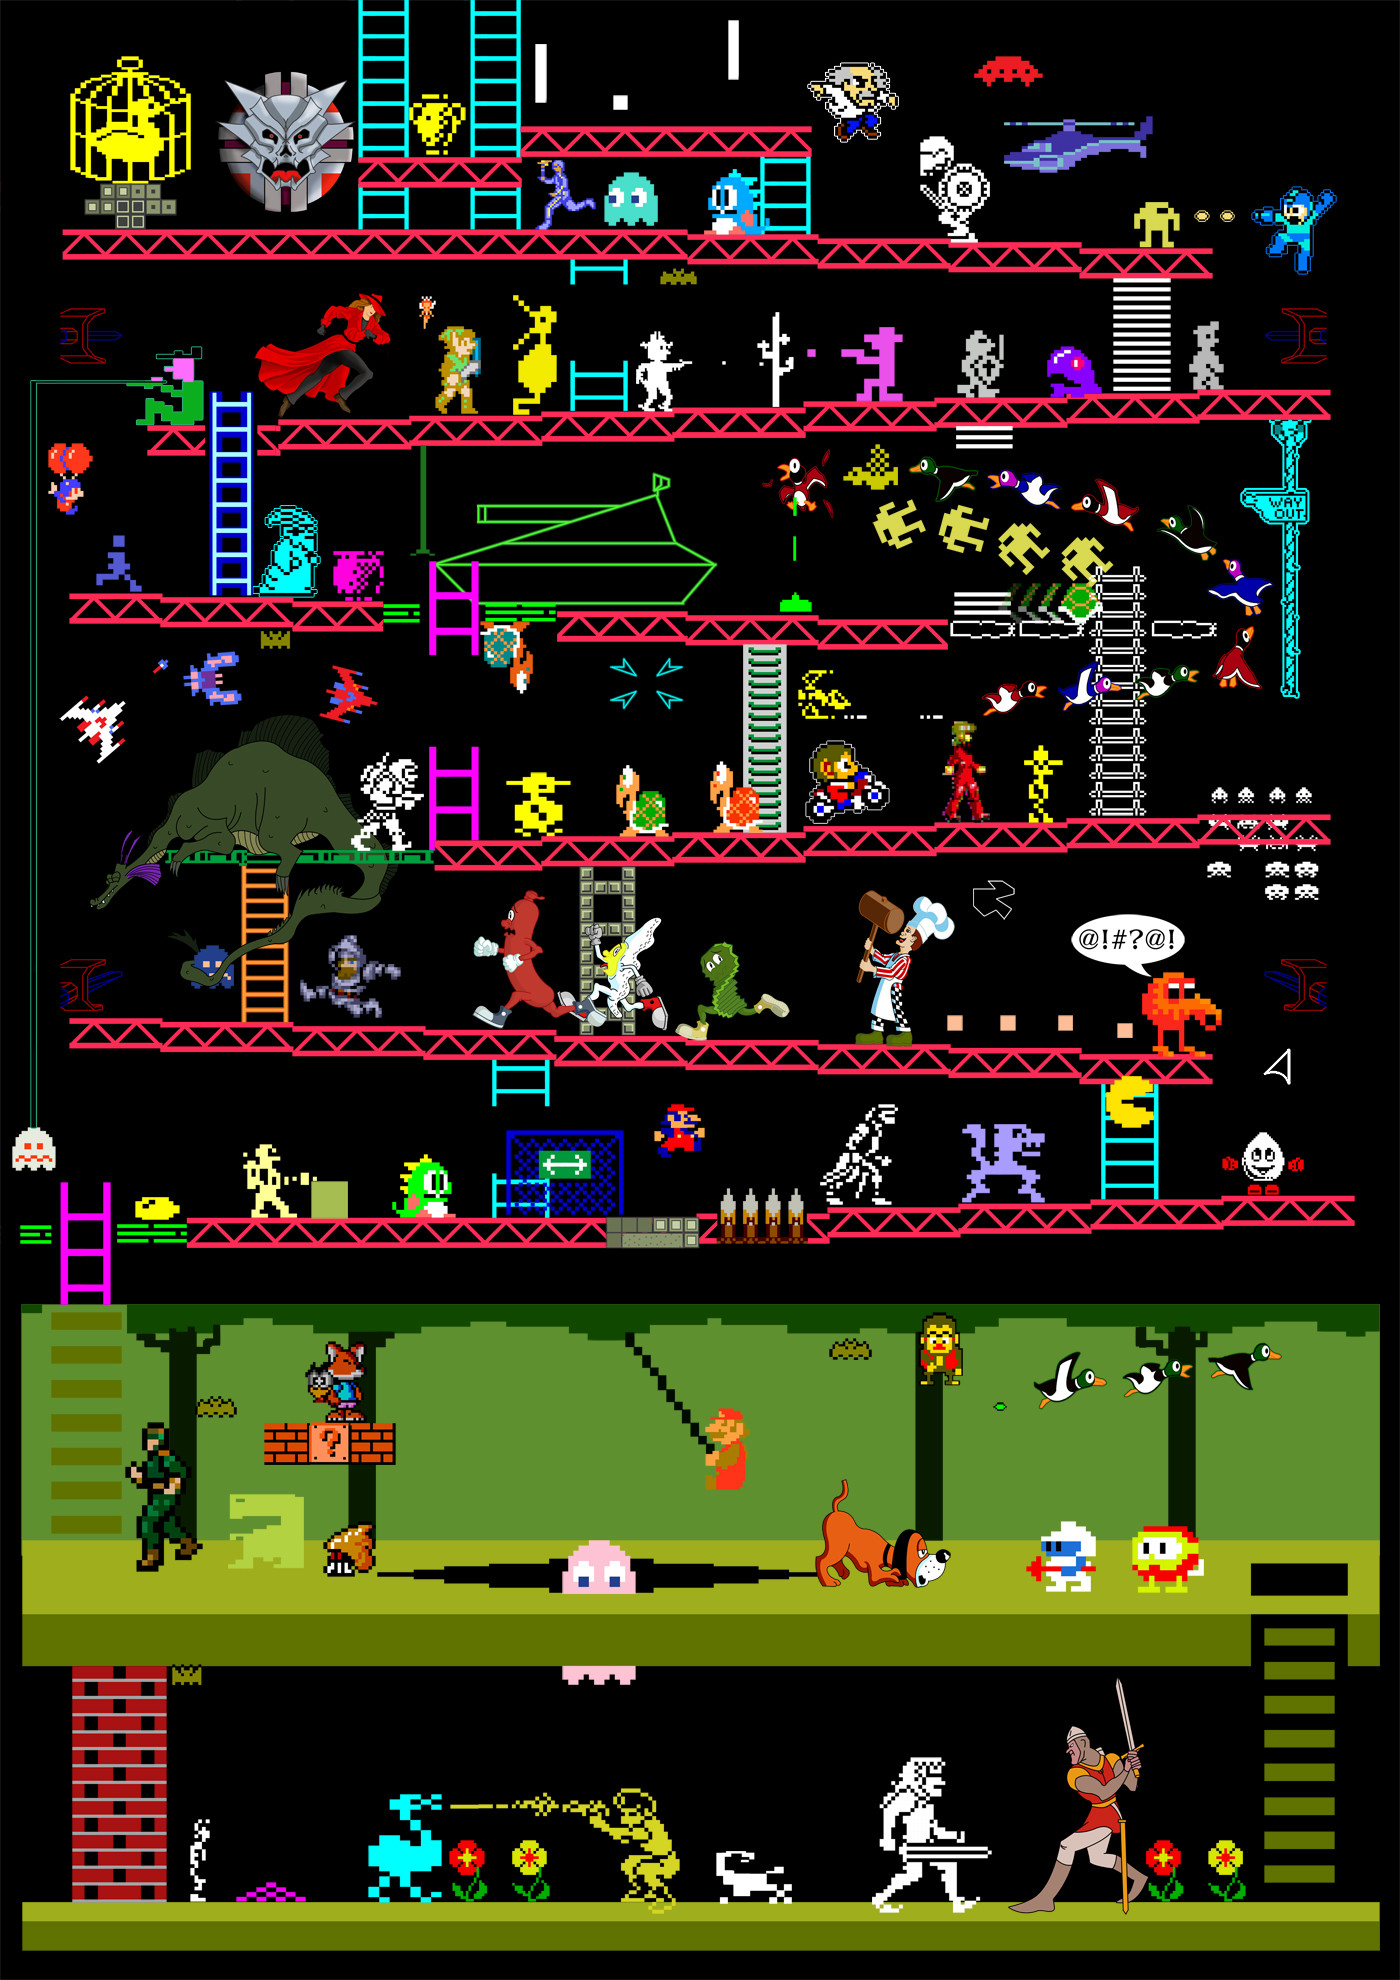 Classic Video and Arcade Games Mashup by Elomin Judan Sha